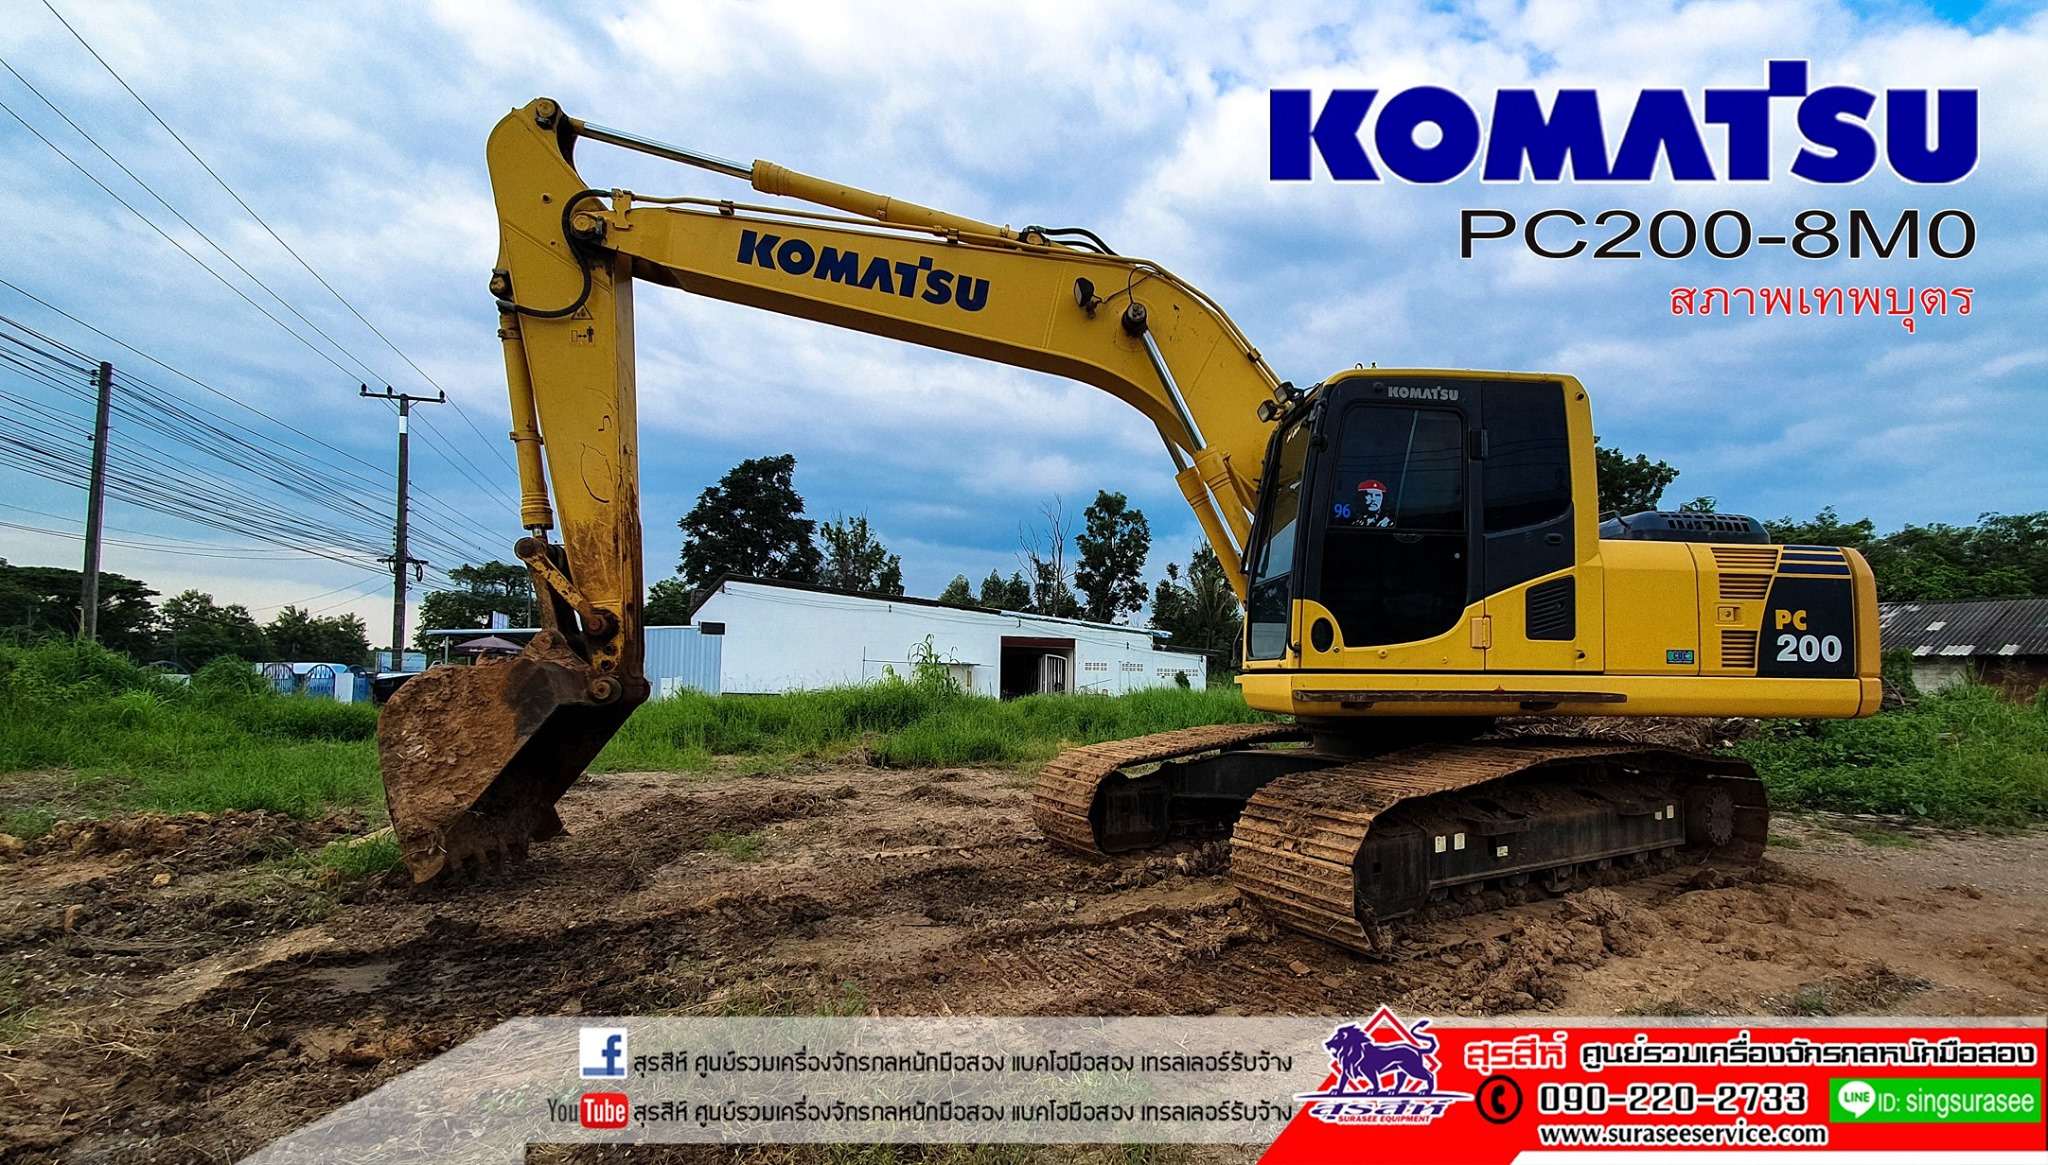 ขายรถแบคโฮมือสอง  KOMATSU PC200-8M0 ใช้งานเพียง 7 พันชั่วโมง สภาพเทพบุตร